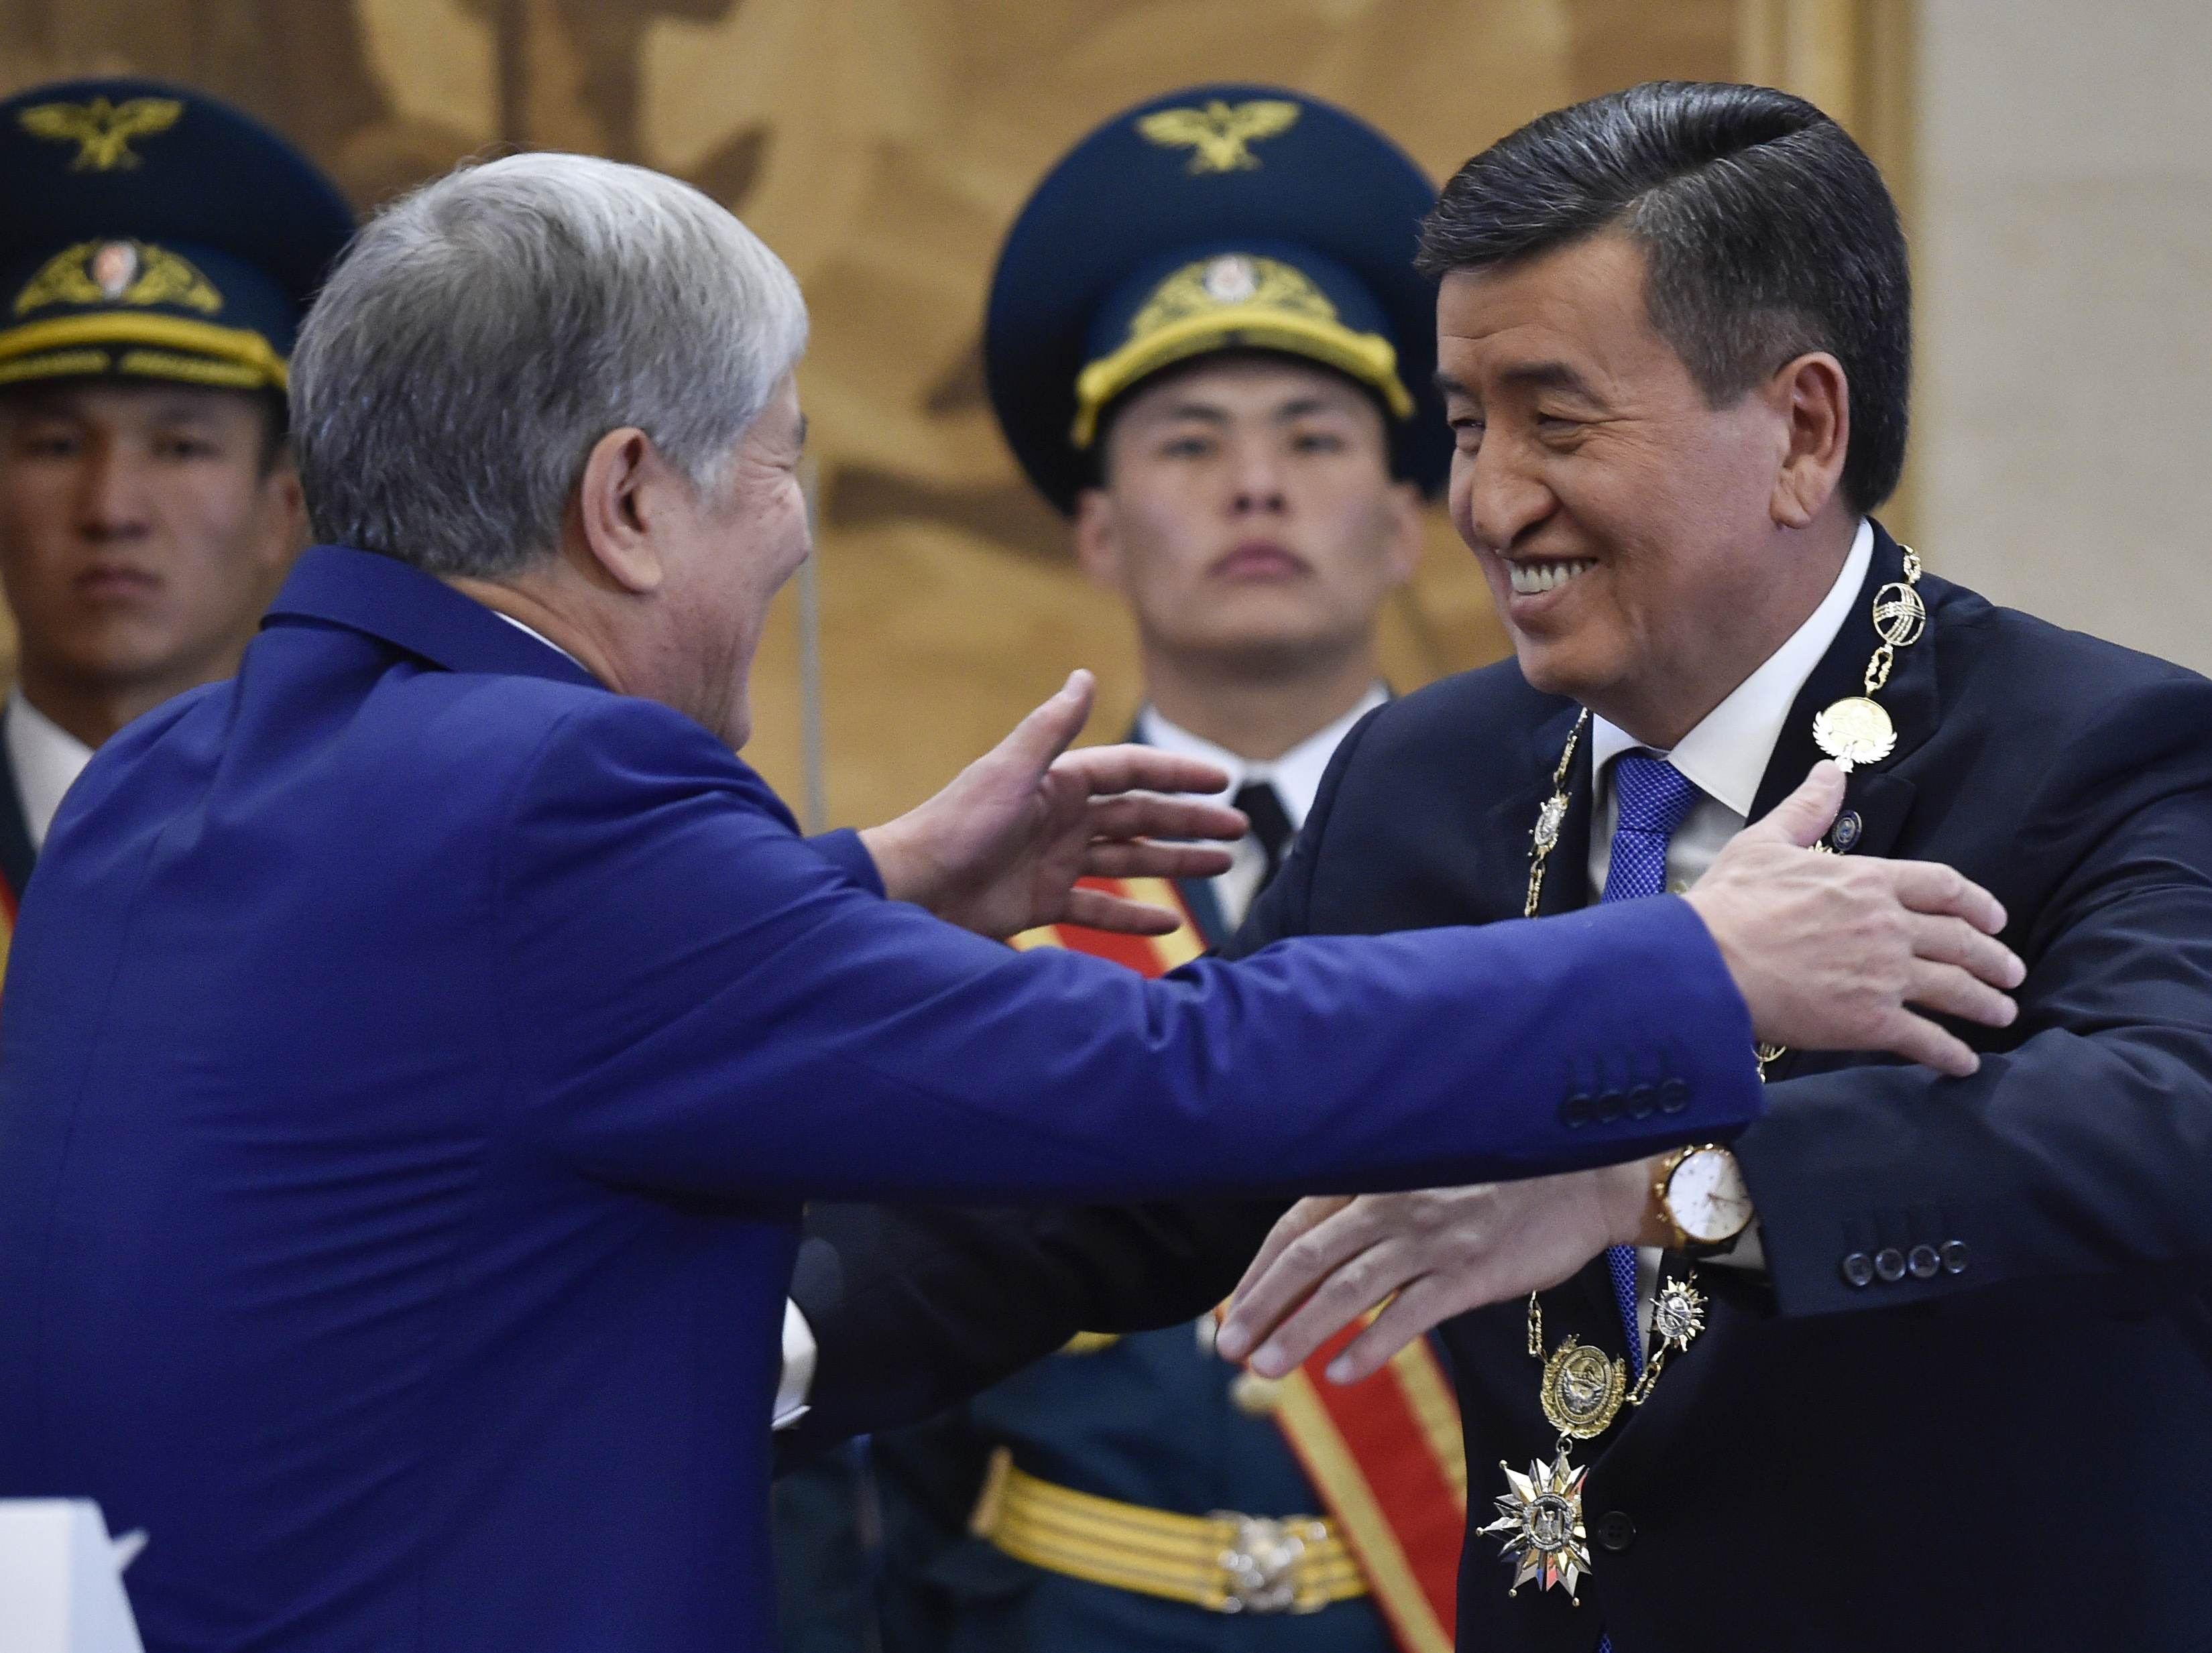 تسليم السلطة لرئيس قرغيزستان الجديد سورون بك جينبيكوف